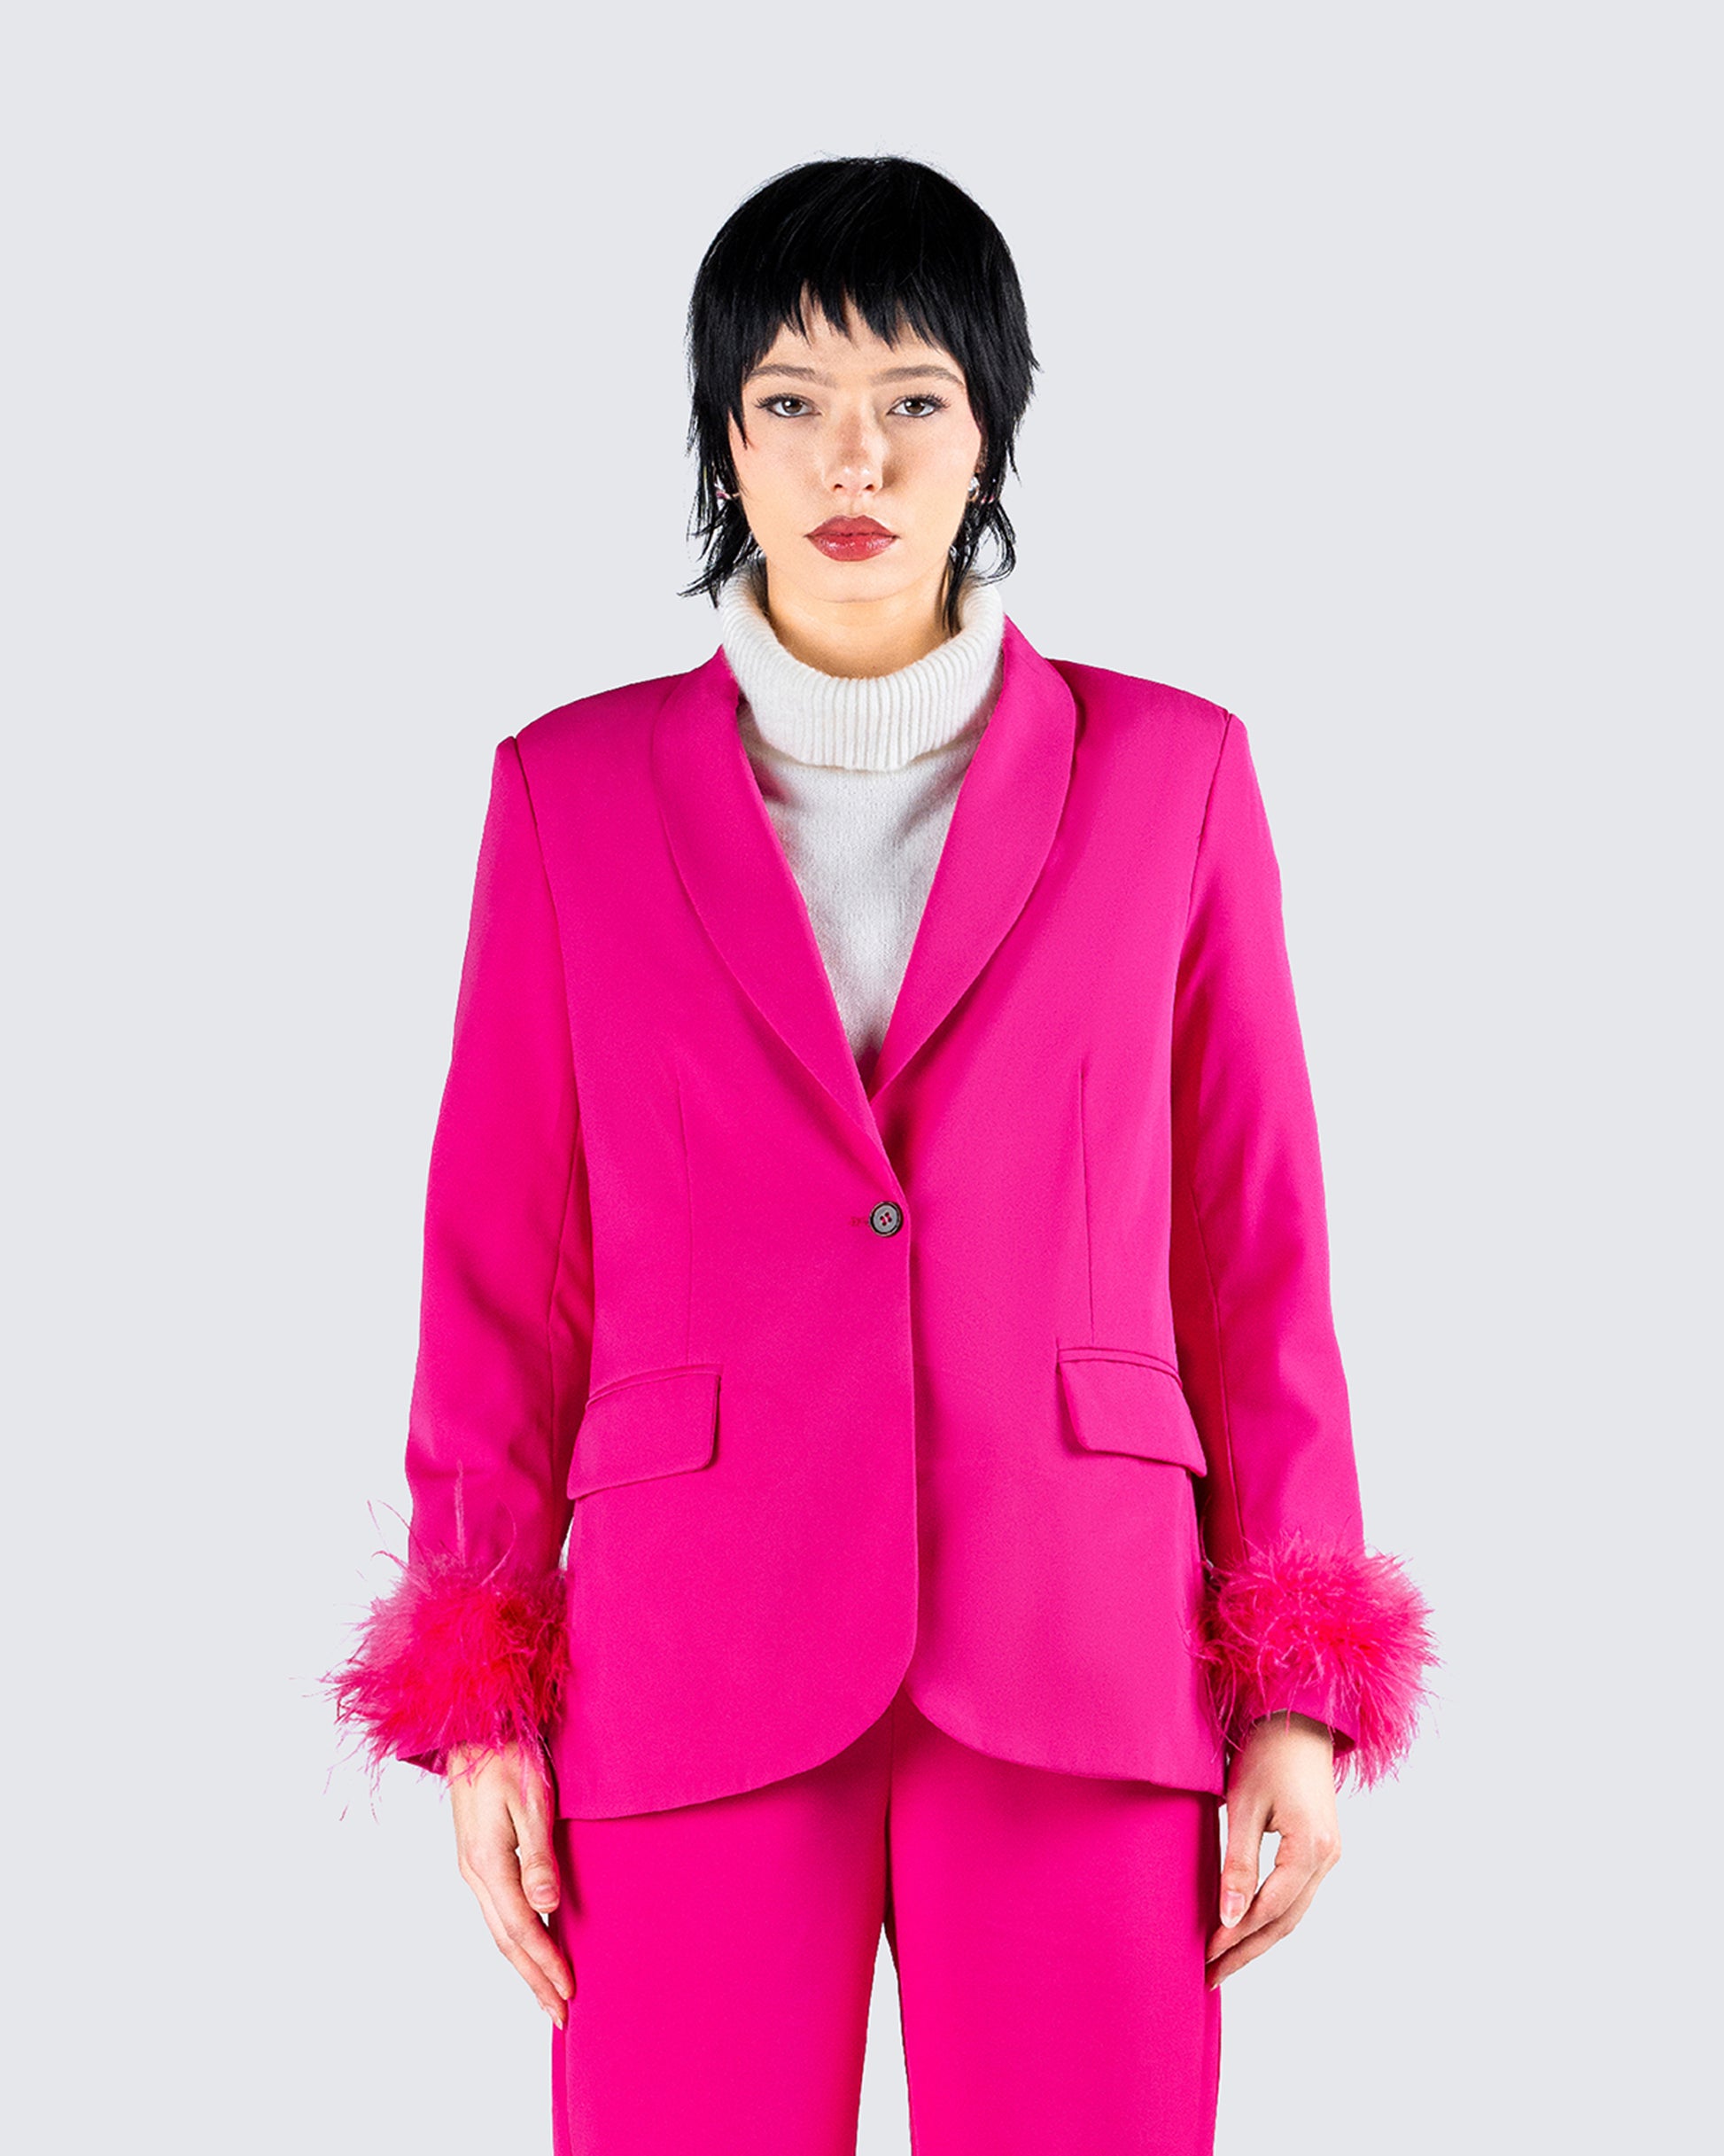 Women's Hot Pink Blazers, Hot Pink Blazers